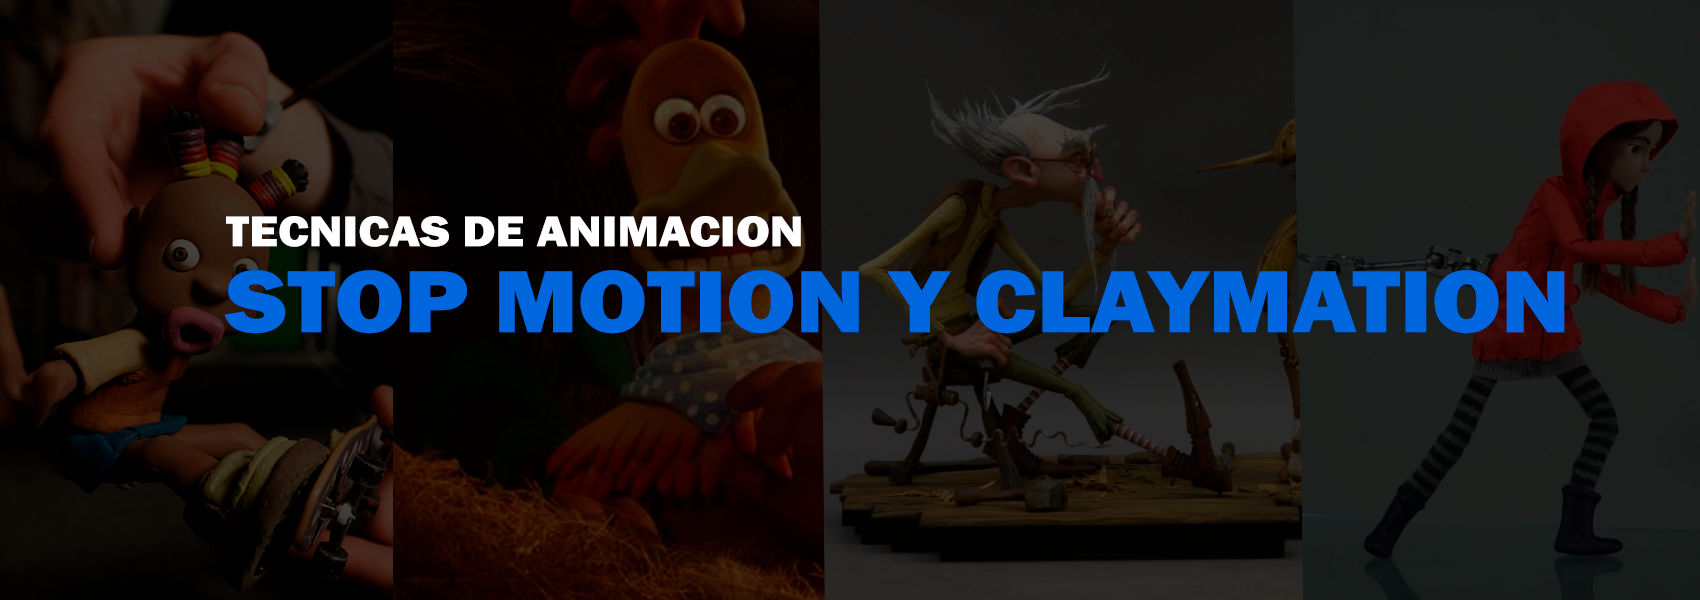 Técnicas de animacion: Stop Motion y Claymation